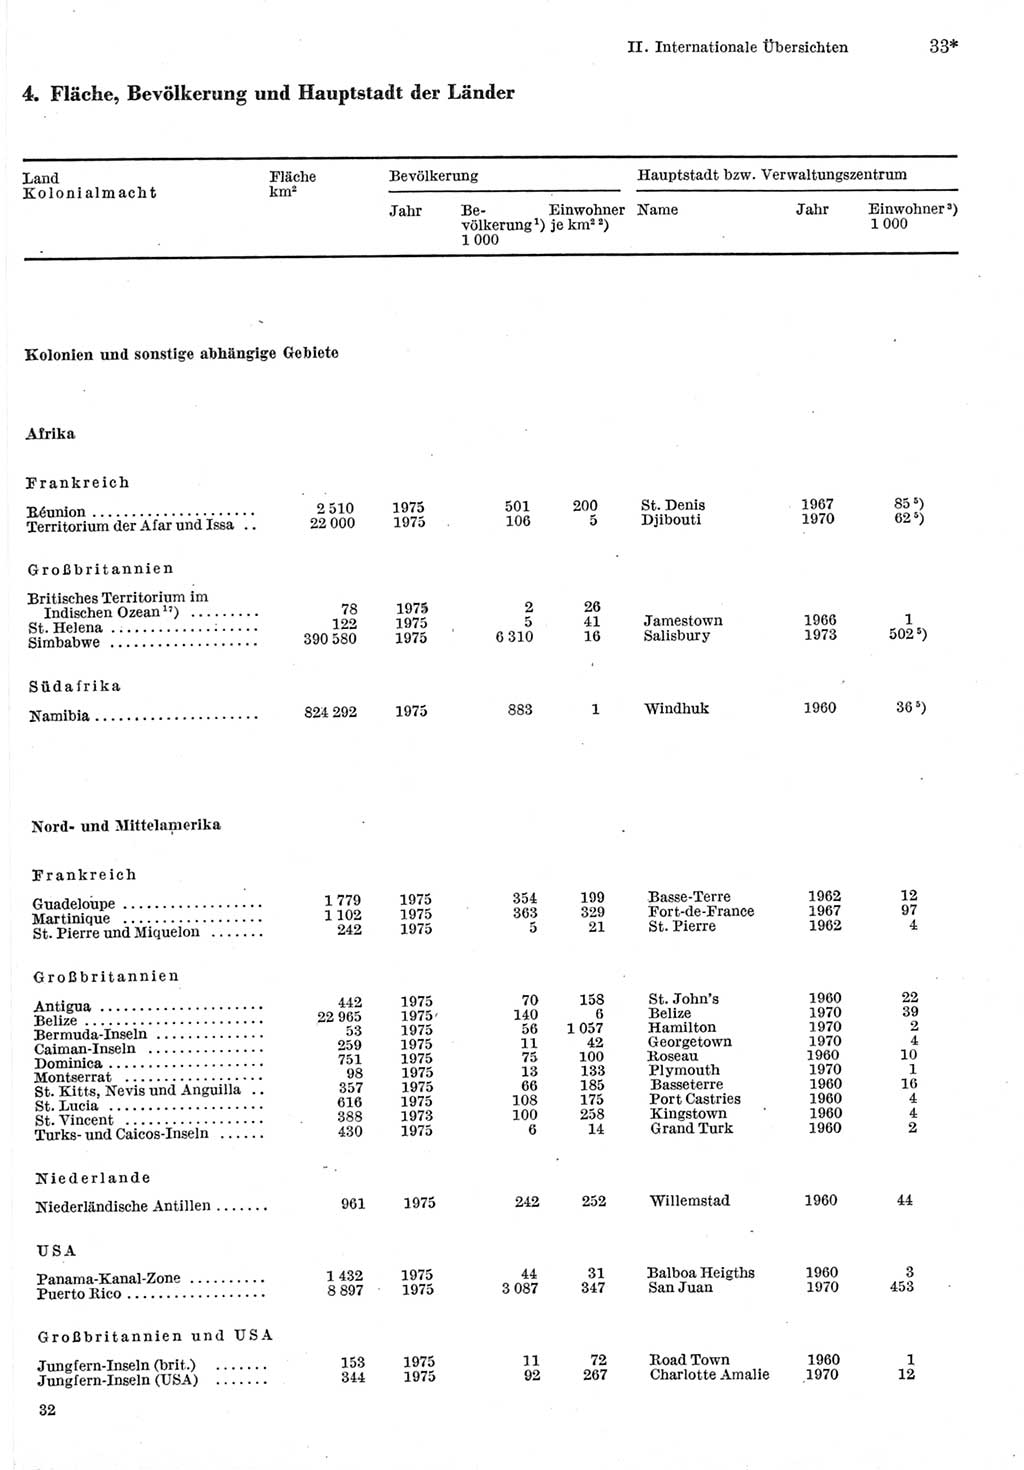 Statistisches Jahrbuch der Deutschen Demokratischen Republik (DDR) 1977, Seite 33 (Stat. Jb. DDR 1977, S. 33)